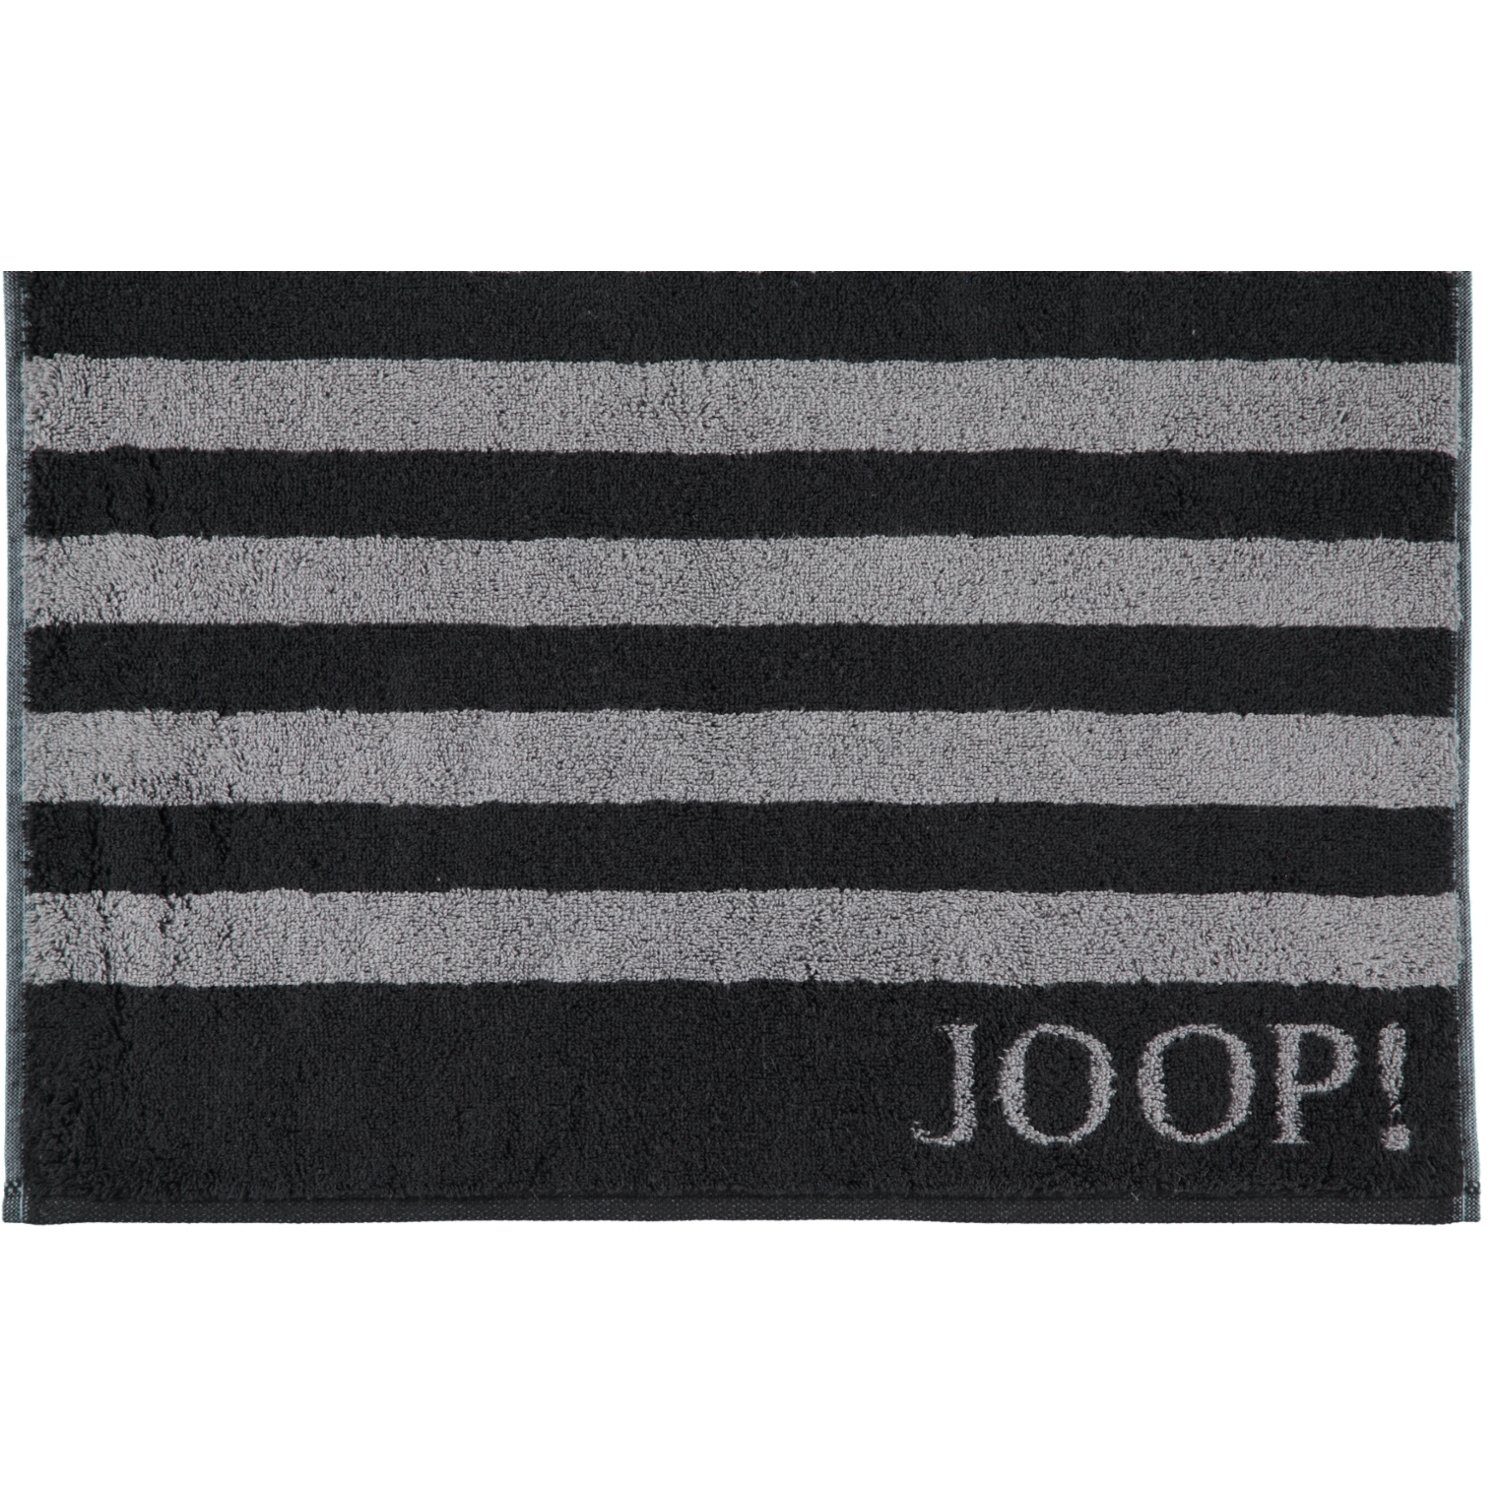 Joop! Handtücher schwarz Baumwolle Classic 1610, 100% Stripes